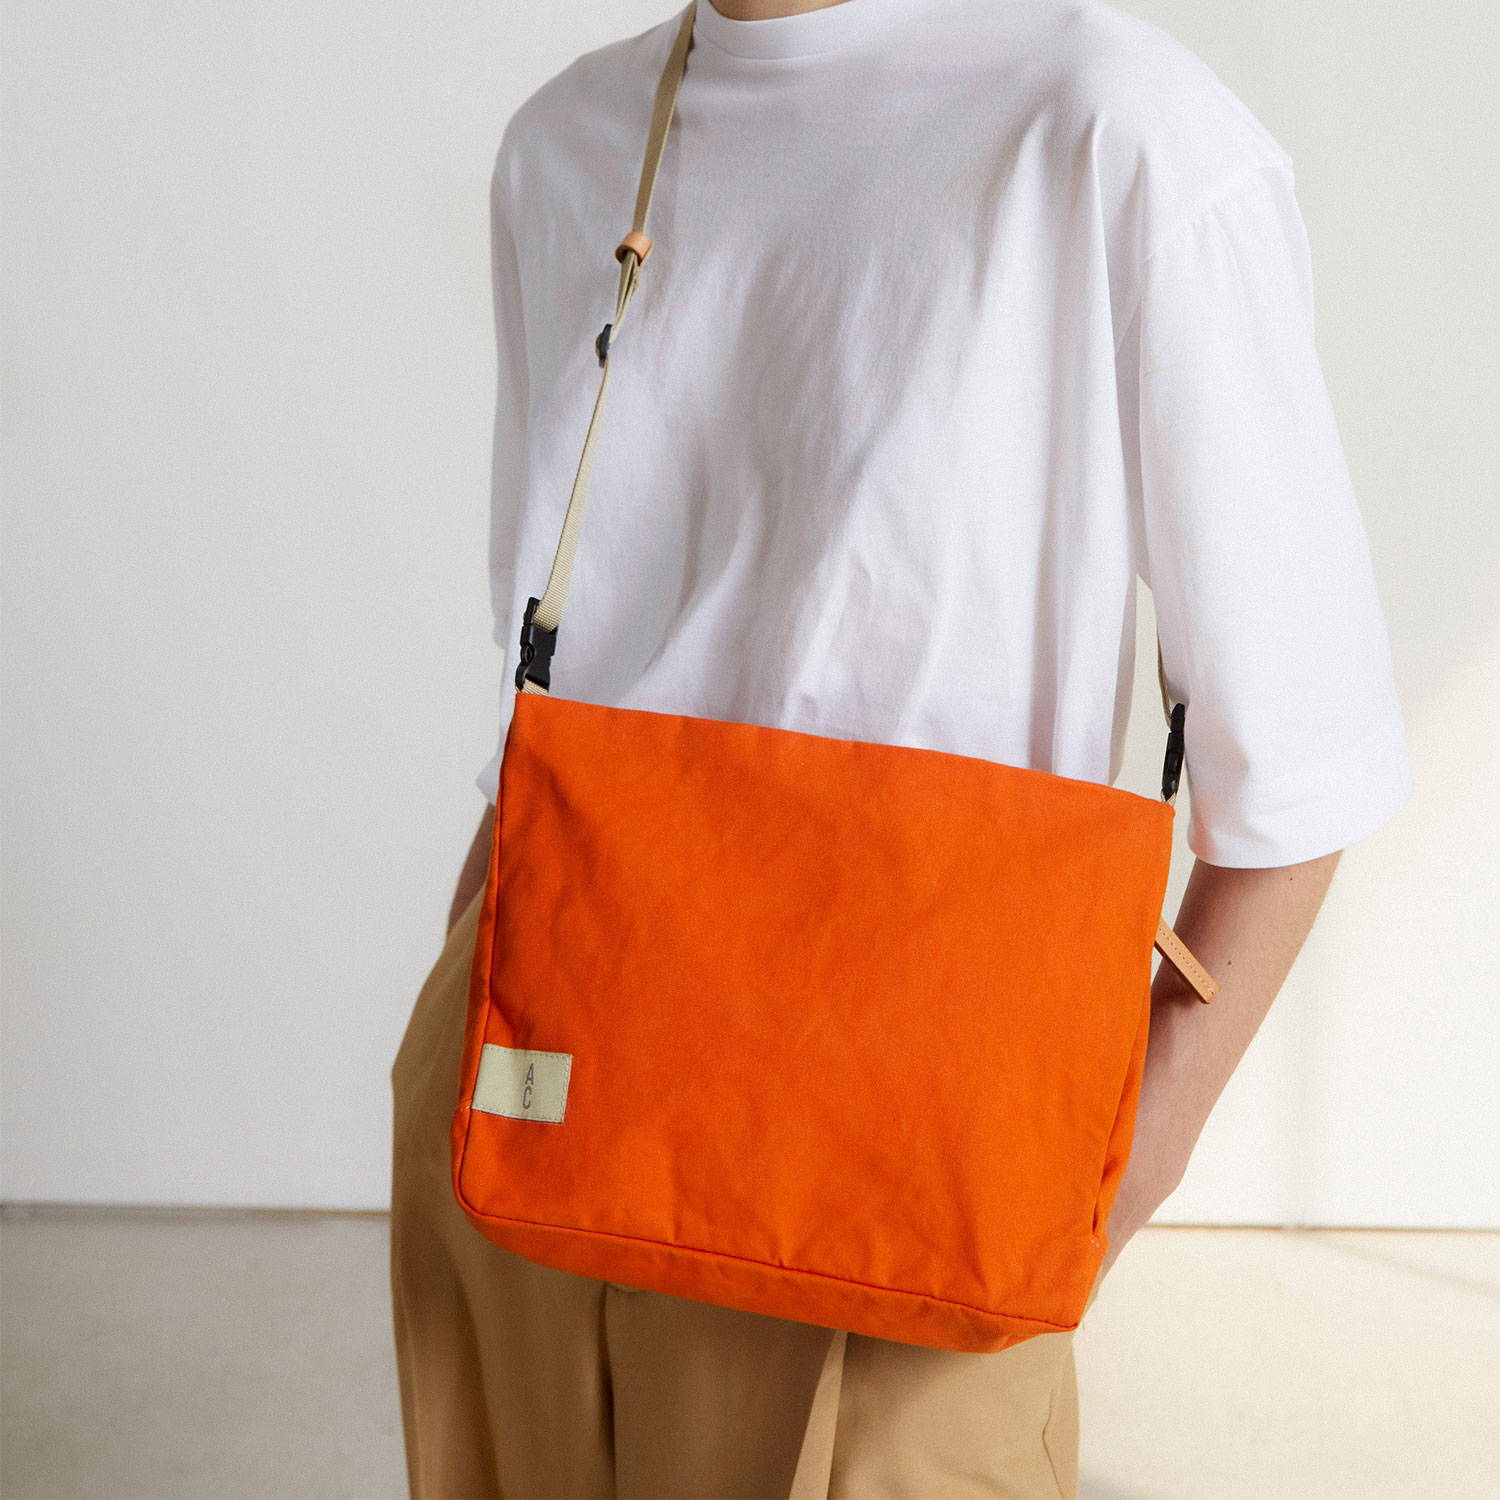 Phillipe Canvas P270 Crossbody Bag in Orange